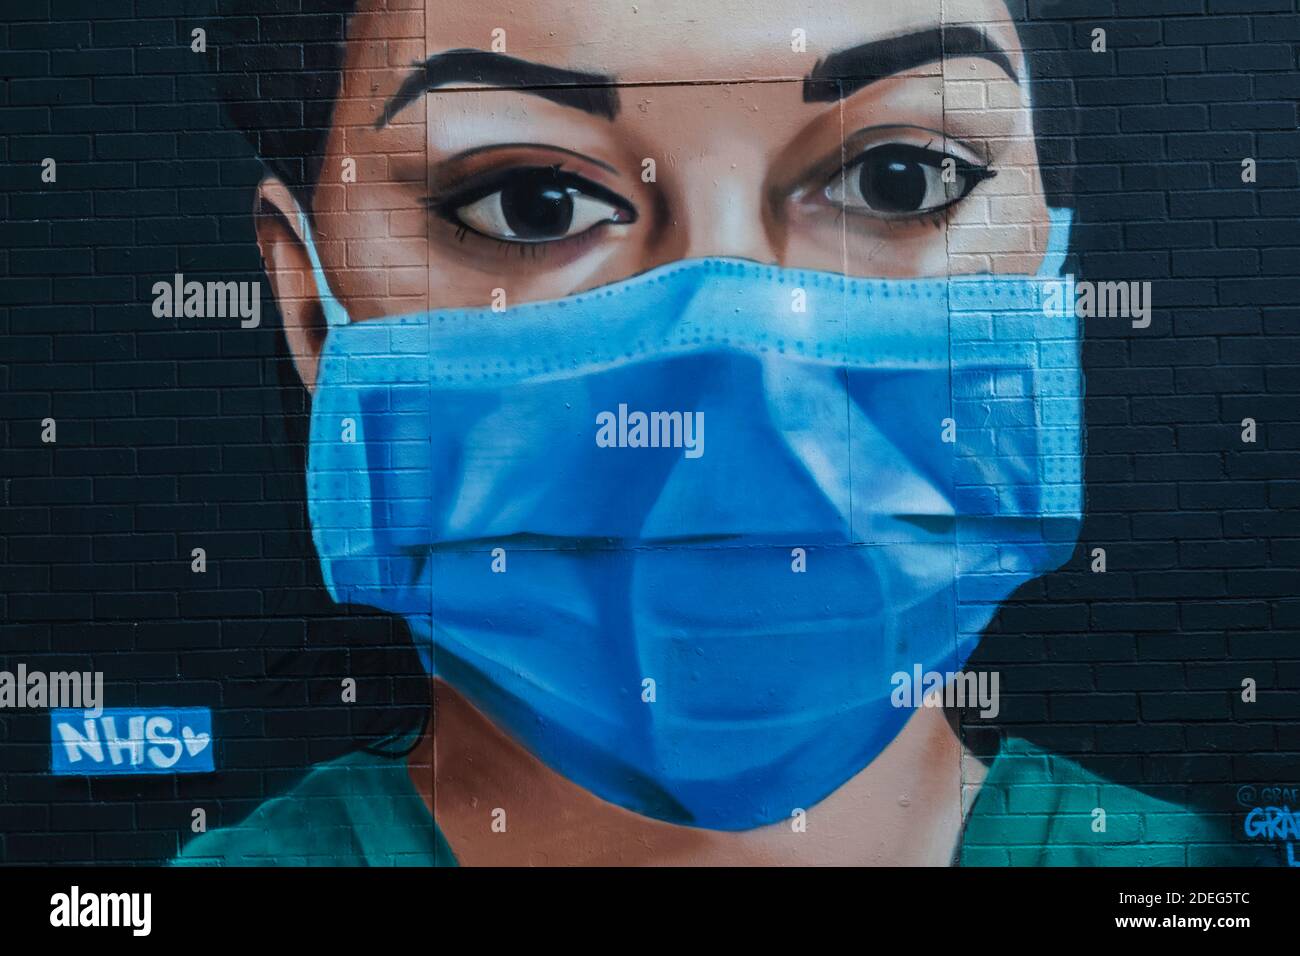 Angleterre, Londres, art mural représentant une infirmière portant un masque facial Banque D'Images